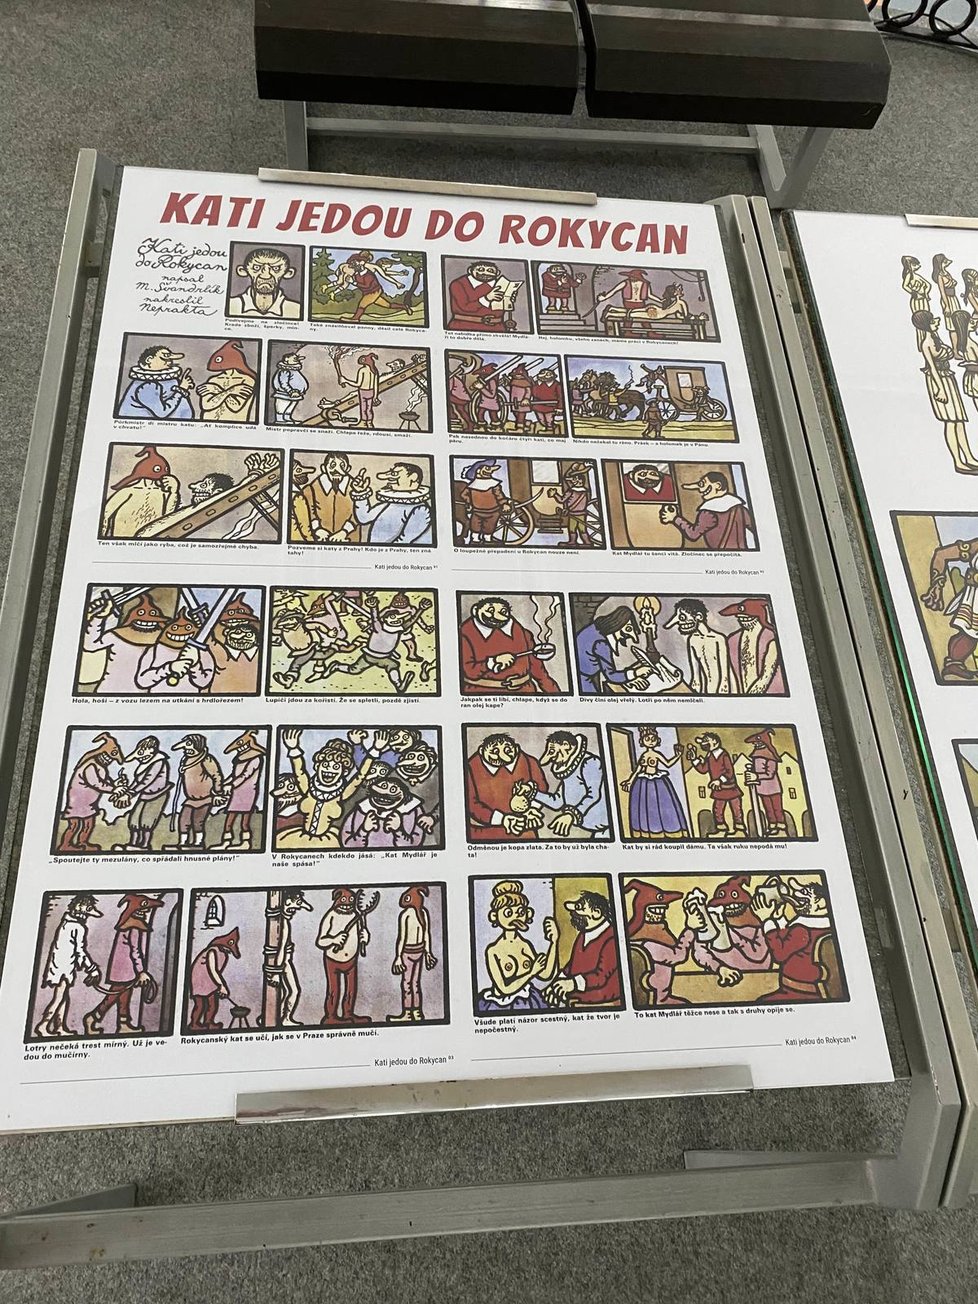 K Plzeňskému kraji se váže i vystavený komiks Kati jedou do Rokycan.